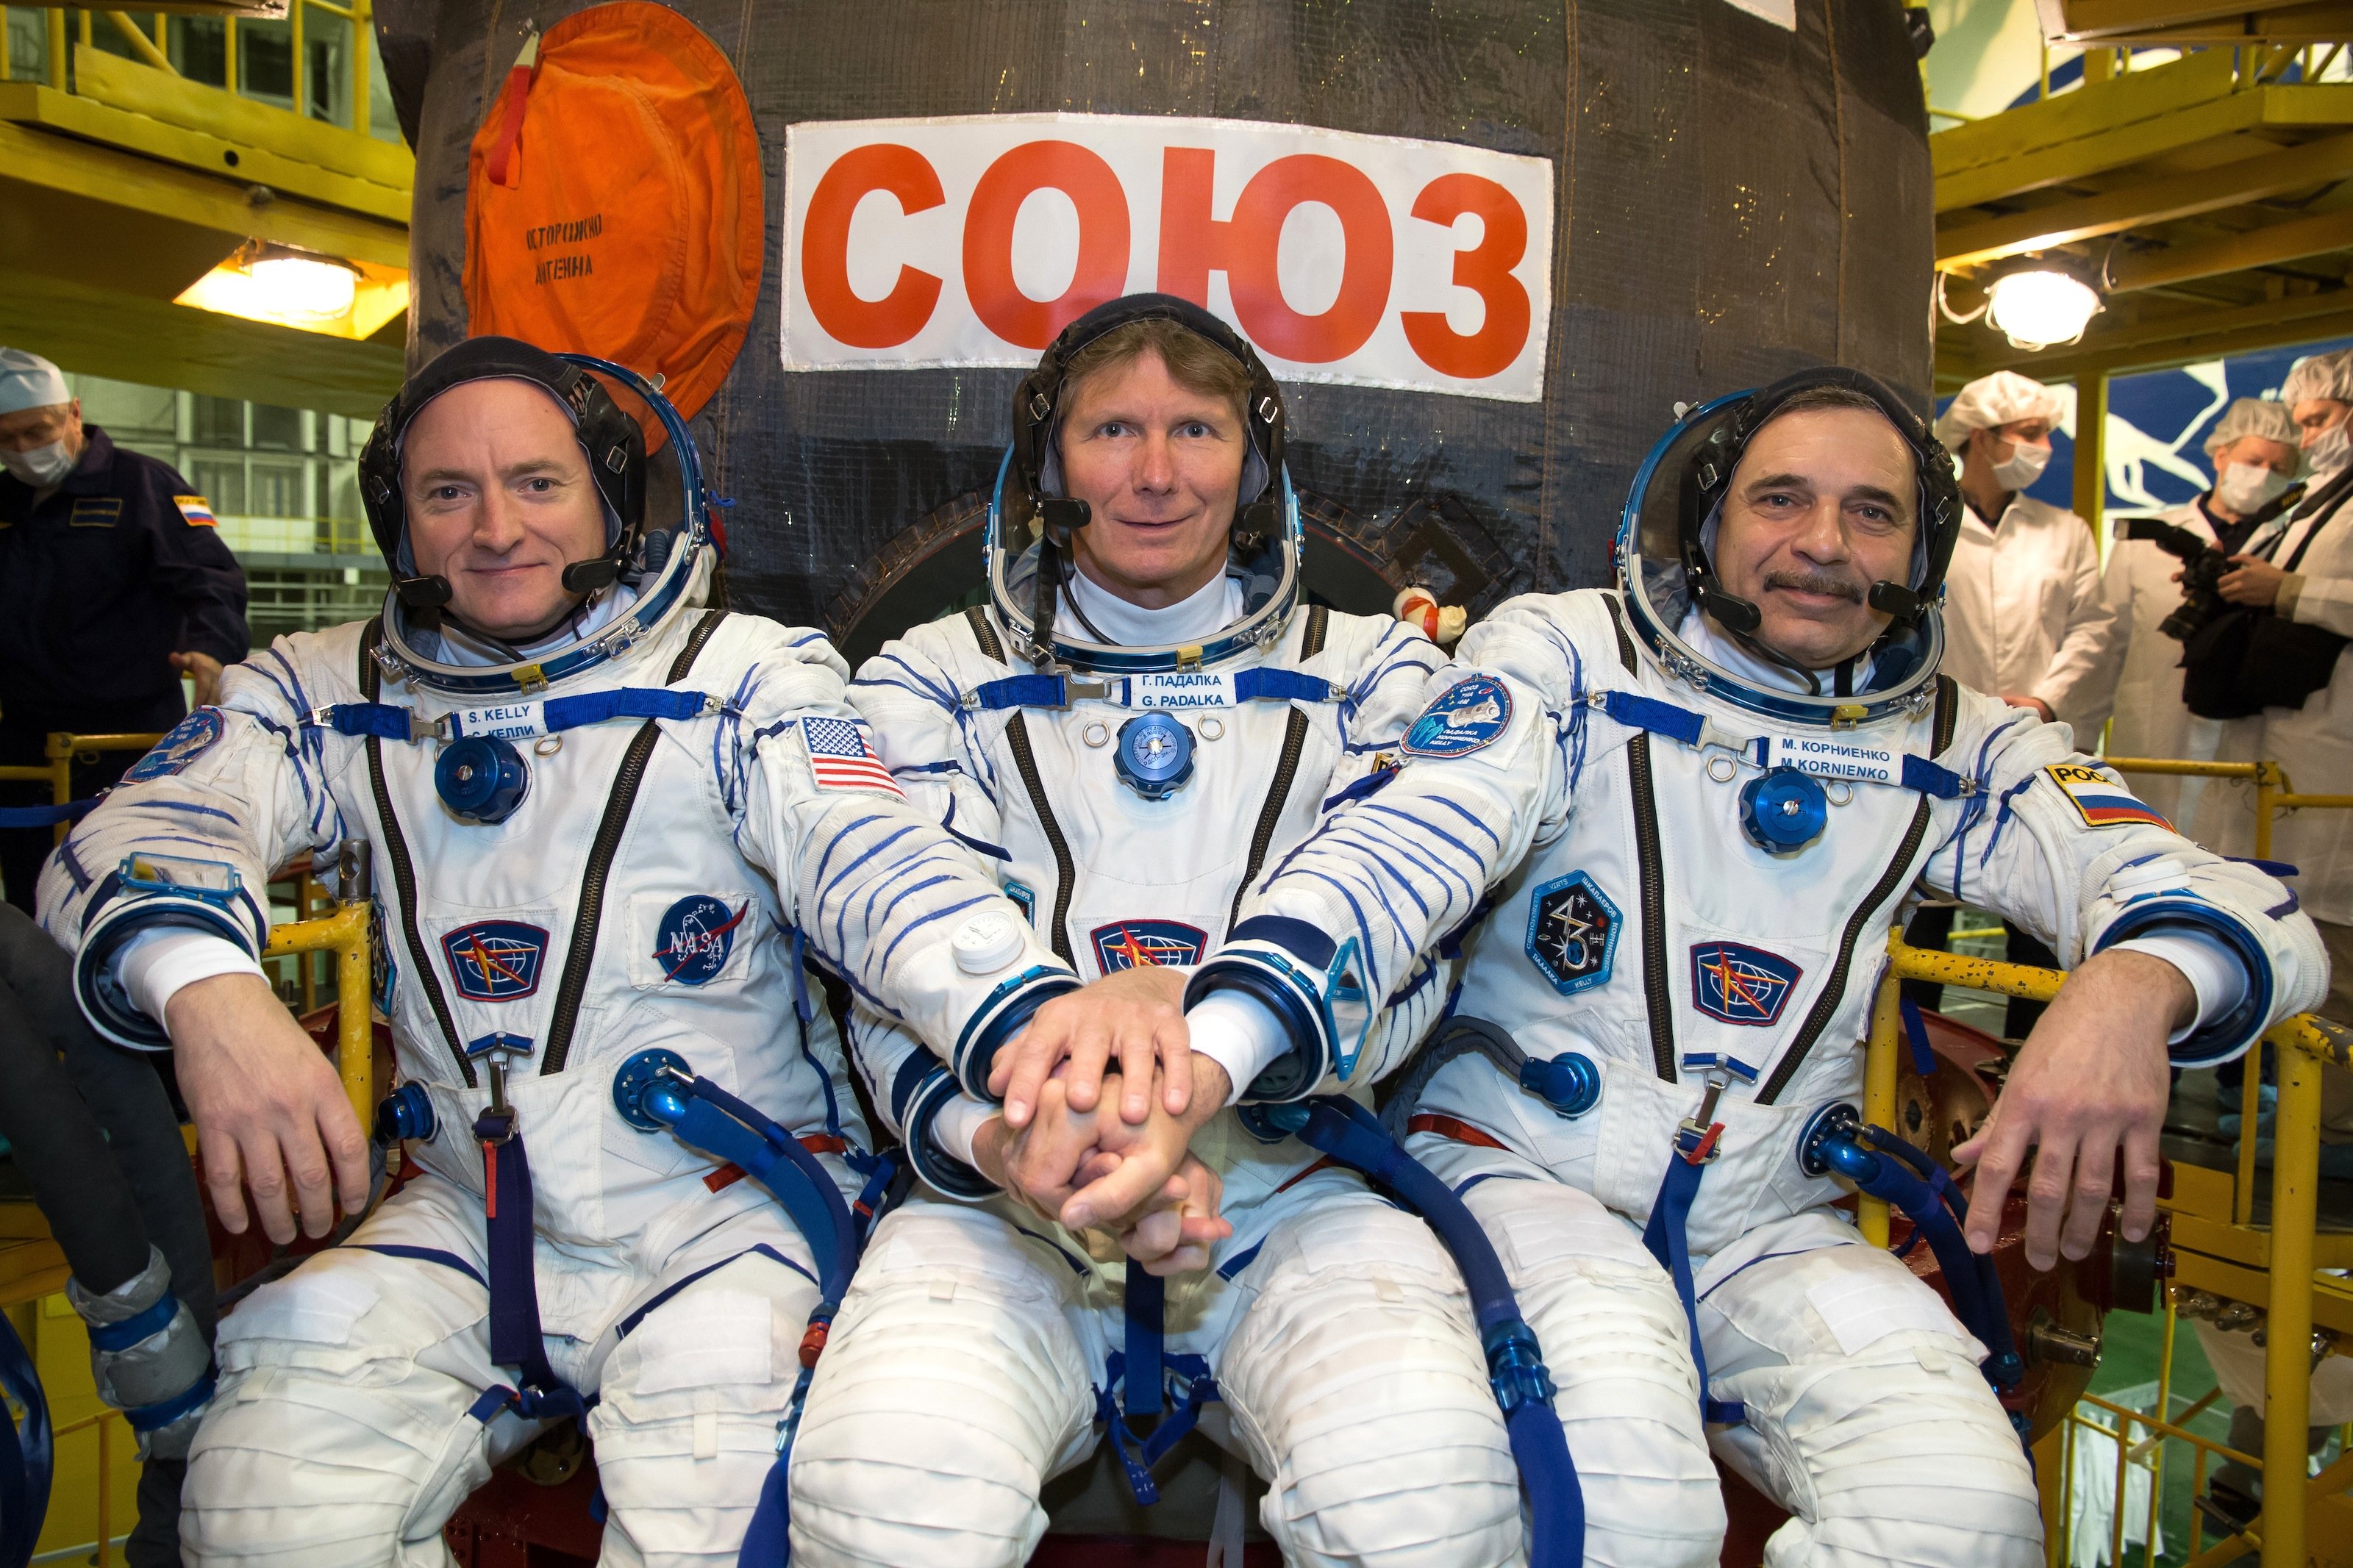 Anprobe der Raumanzüge: Die Astronauten der Expedition 43 zur ISS haben vor der Sojus-Kapsel Platz genommen, die für den Flug zur Internationalen Raumstation im Weltraumzentrum in Baikonur noch einmal technisch überprüft wird. Von links: NASA-Astronaut Scott Kelly und die russischen Kosmonauten Genadi Padalka und Michail Kornienko.